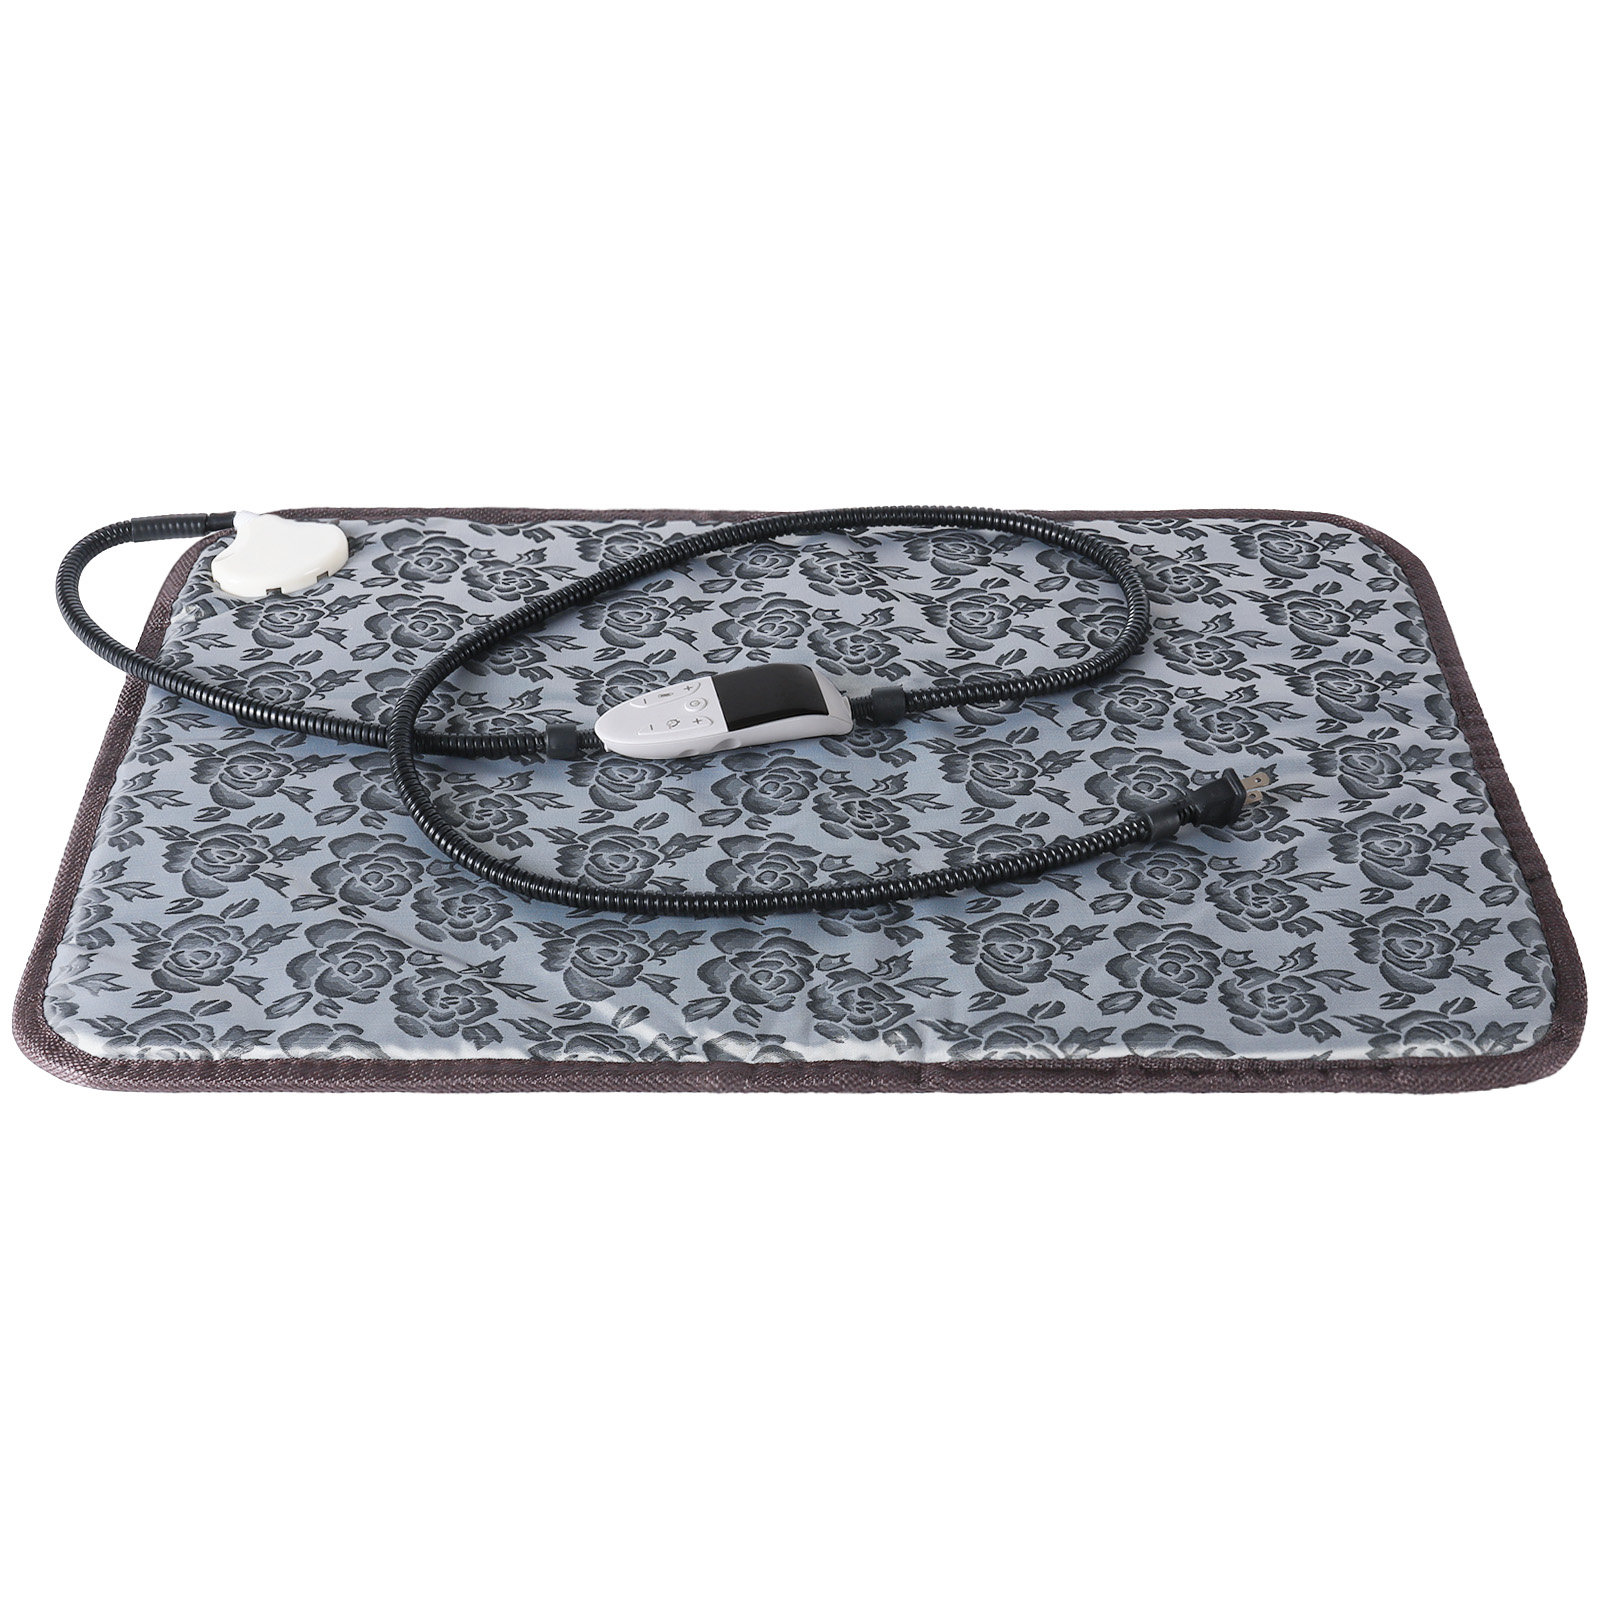 Heavy-Duty Heat Reflective Ironing Blanket - 28 1/4 x 21 3/4